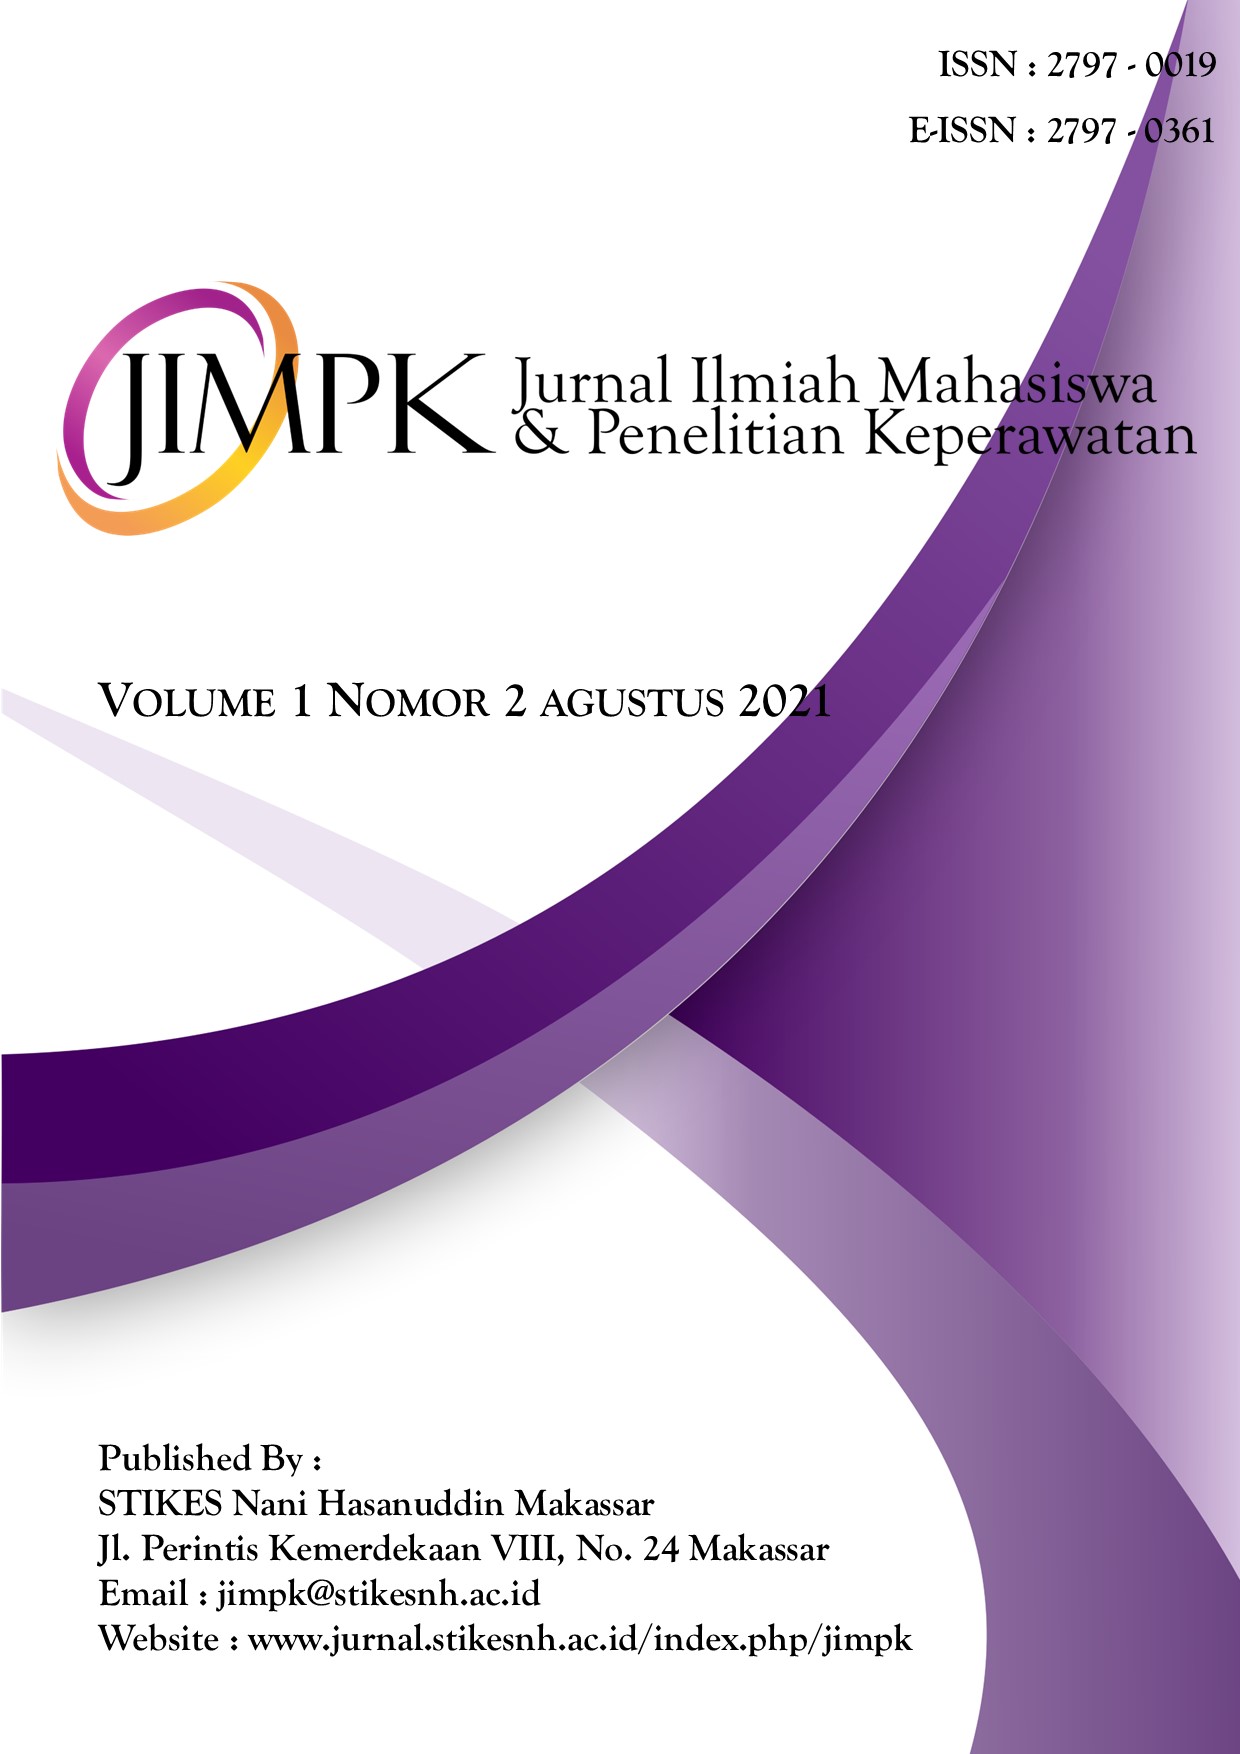 					View Vol. 1 No. 2 (2021): Jurnal Ilmiah Mahasiswa & Penelitian Keperawatan
				